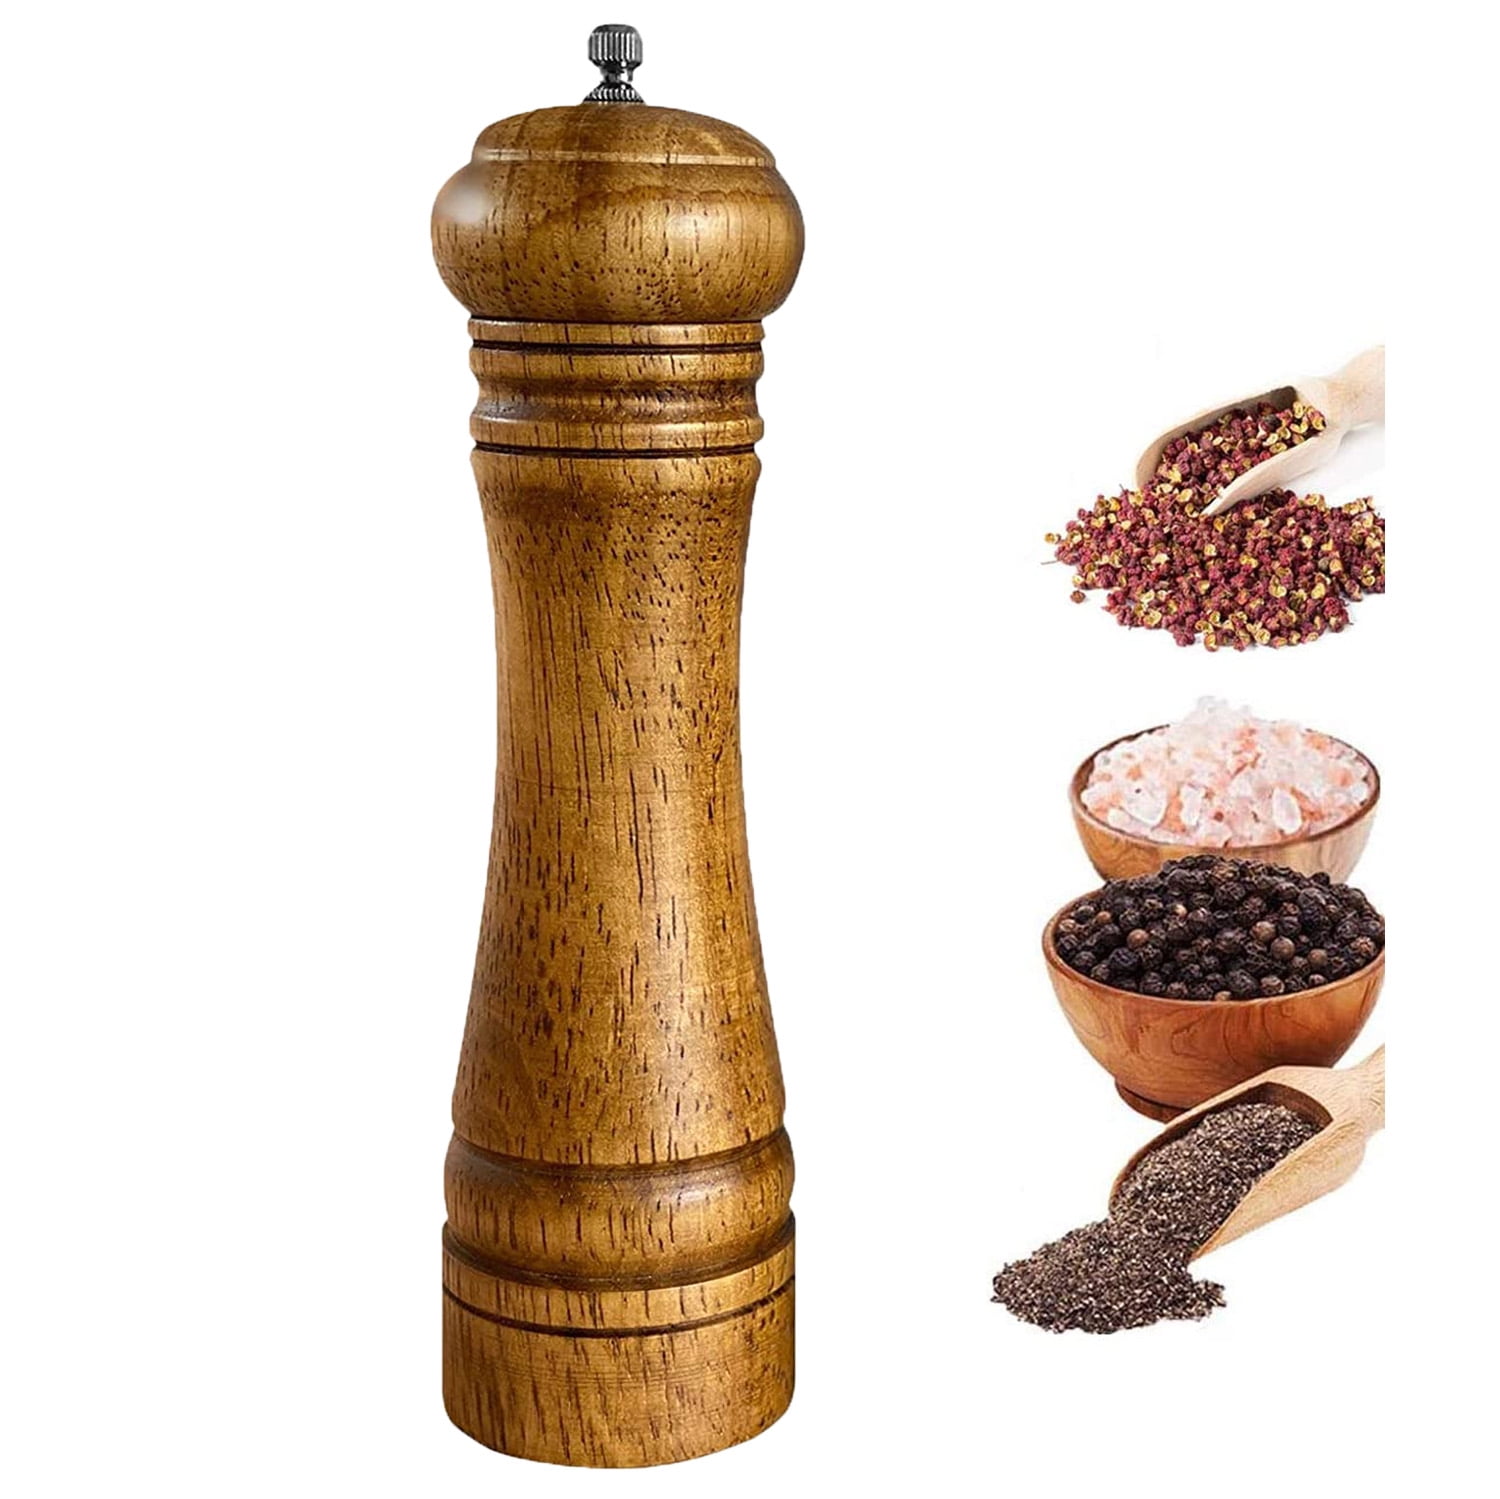 OXO Good Grips 1141000 Salt And Pepper Grinder Set  Salt and pepper  grinders, Salt grinder, Pepper grinder